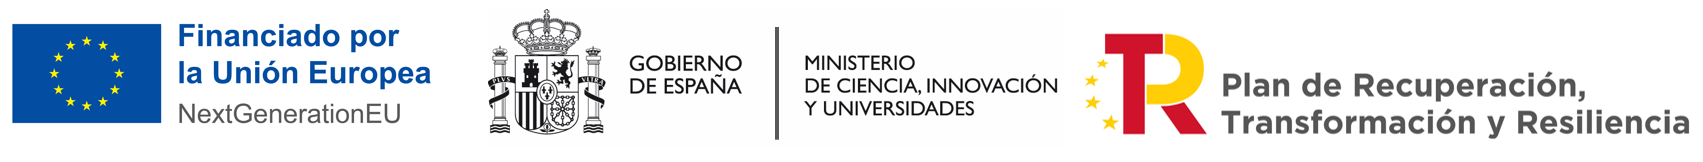 EU+Gob + ministerio_logo nuevo con Universidades